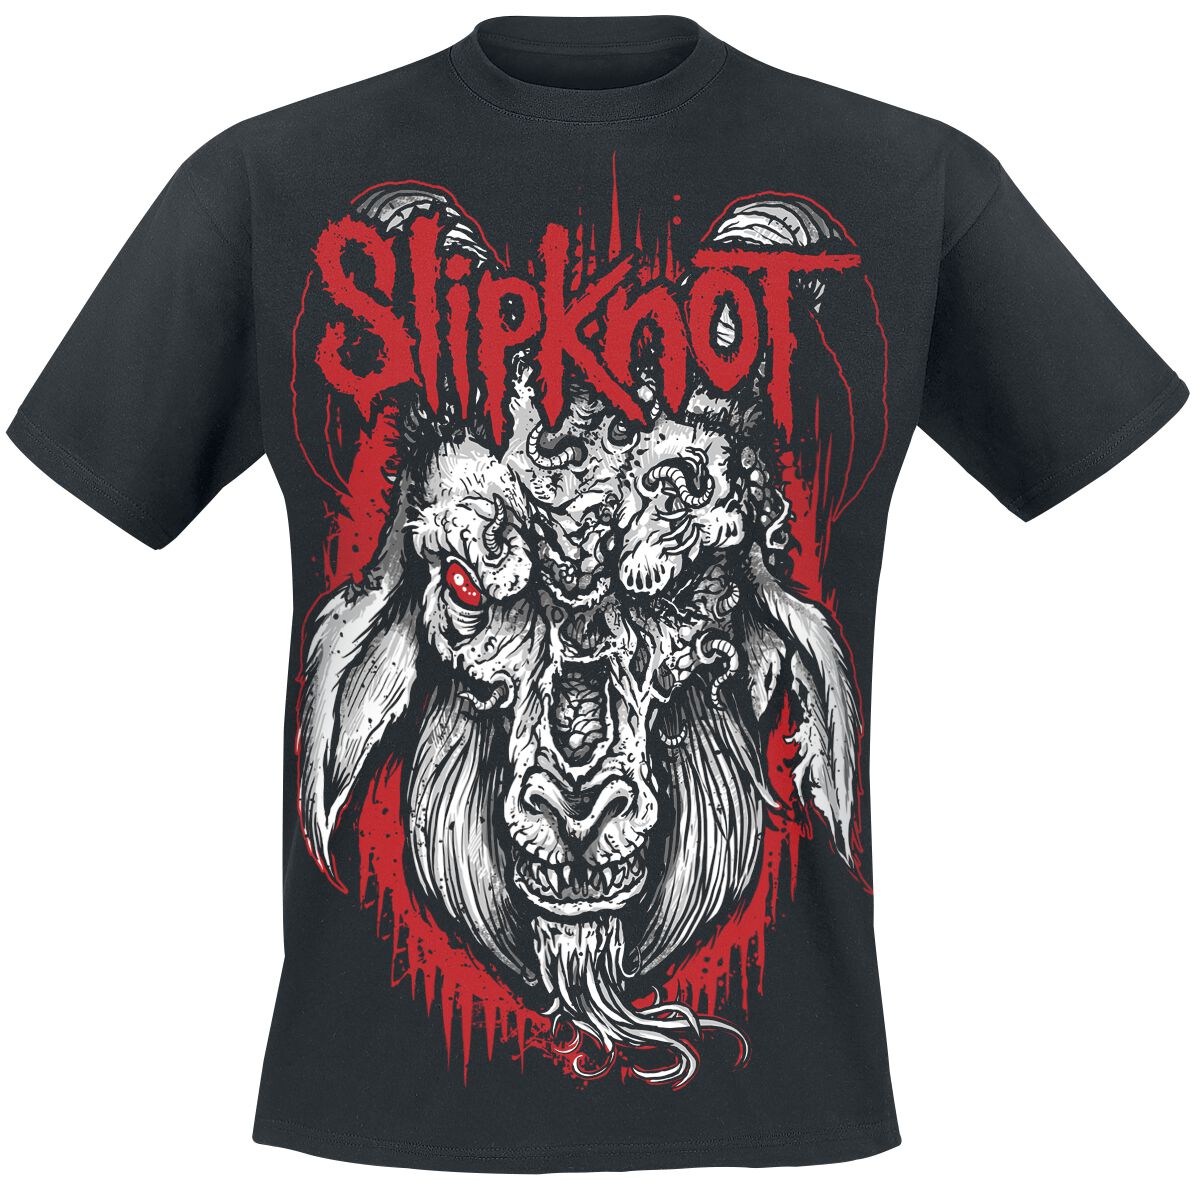 Slipknot T-Shirt - Rotting Goat - S bis 5XL - für Männer - Größe M - schwarz  - Lizenziertes Merchandise!